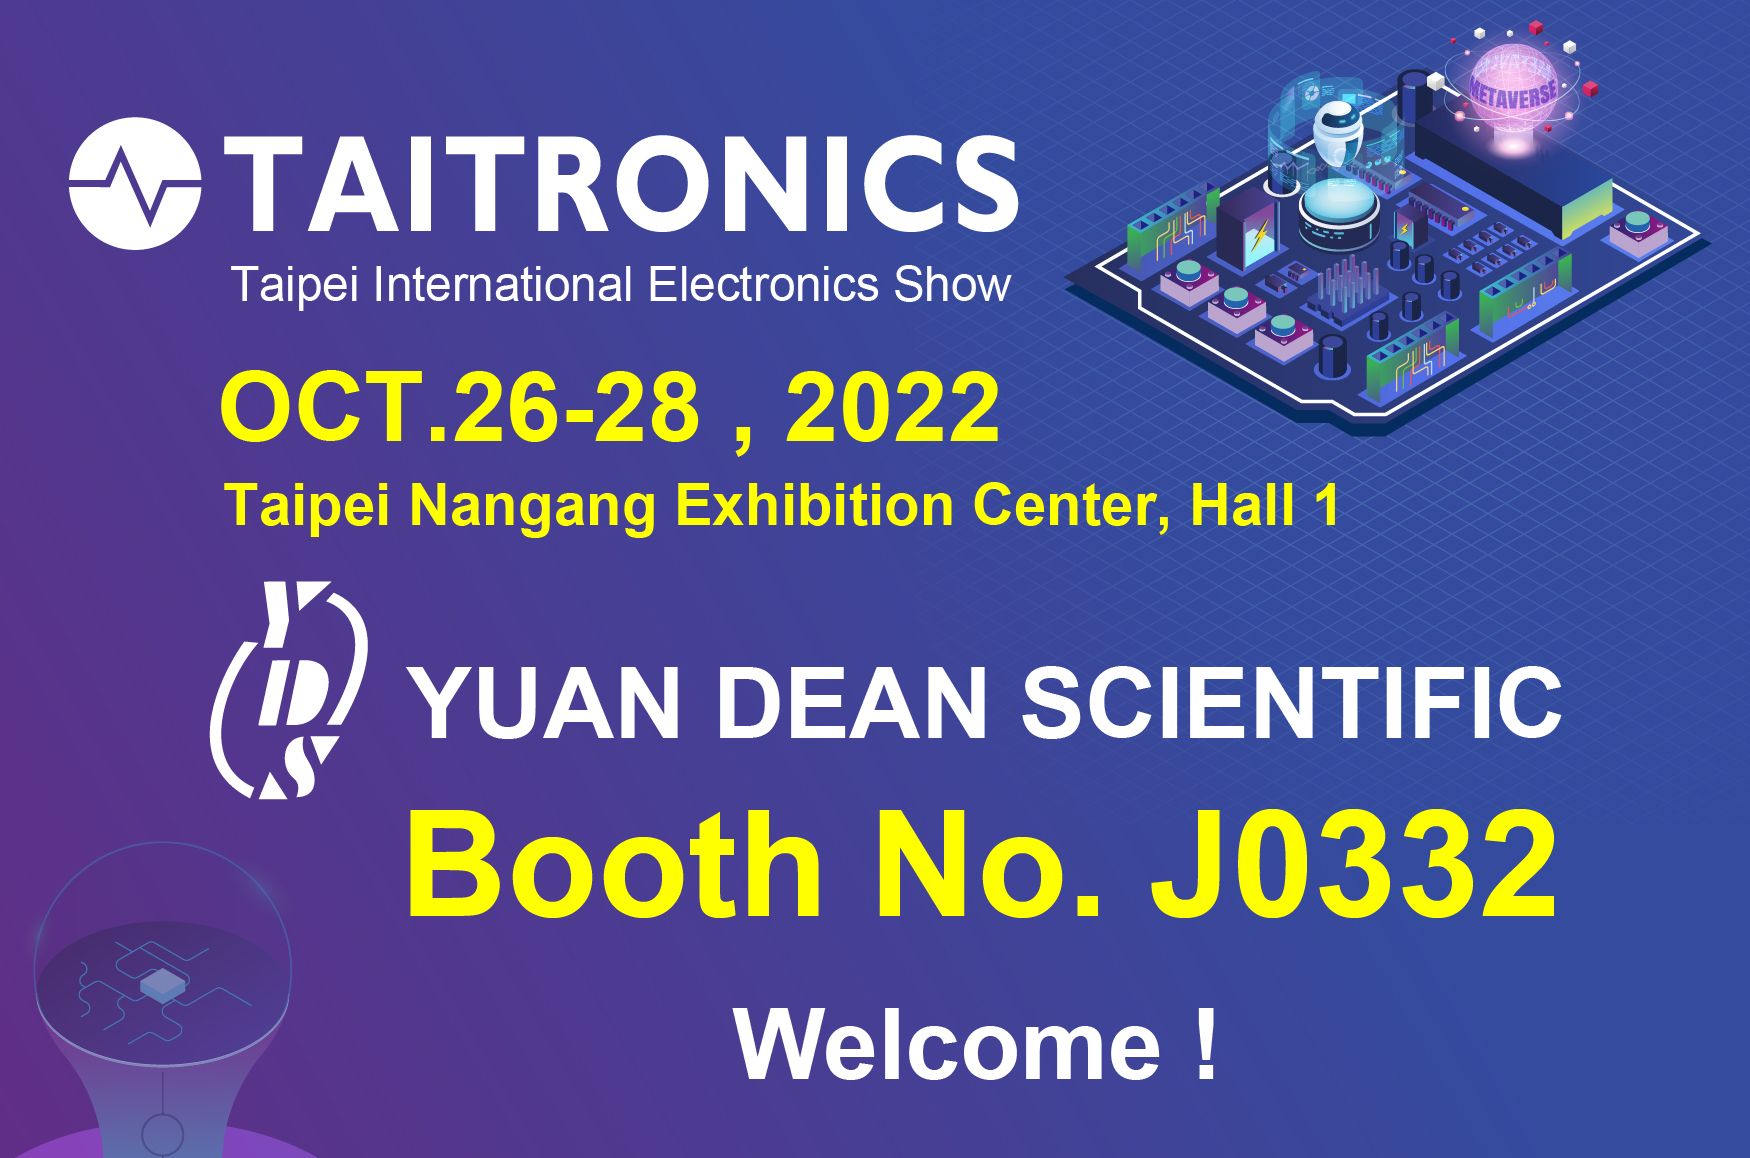 به جناب YUAN DEAN در غرفه J0332 نمایشگاه بین‌المللی الکترونیک تایپه TAITRONICS سال 2022 خوش آمدید.